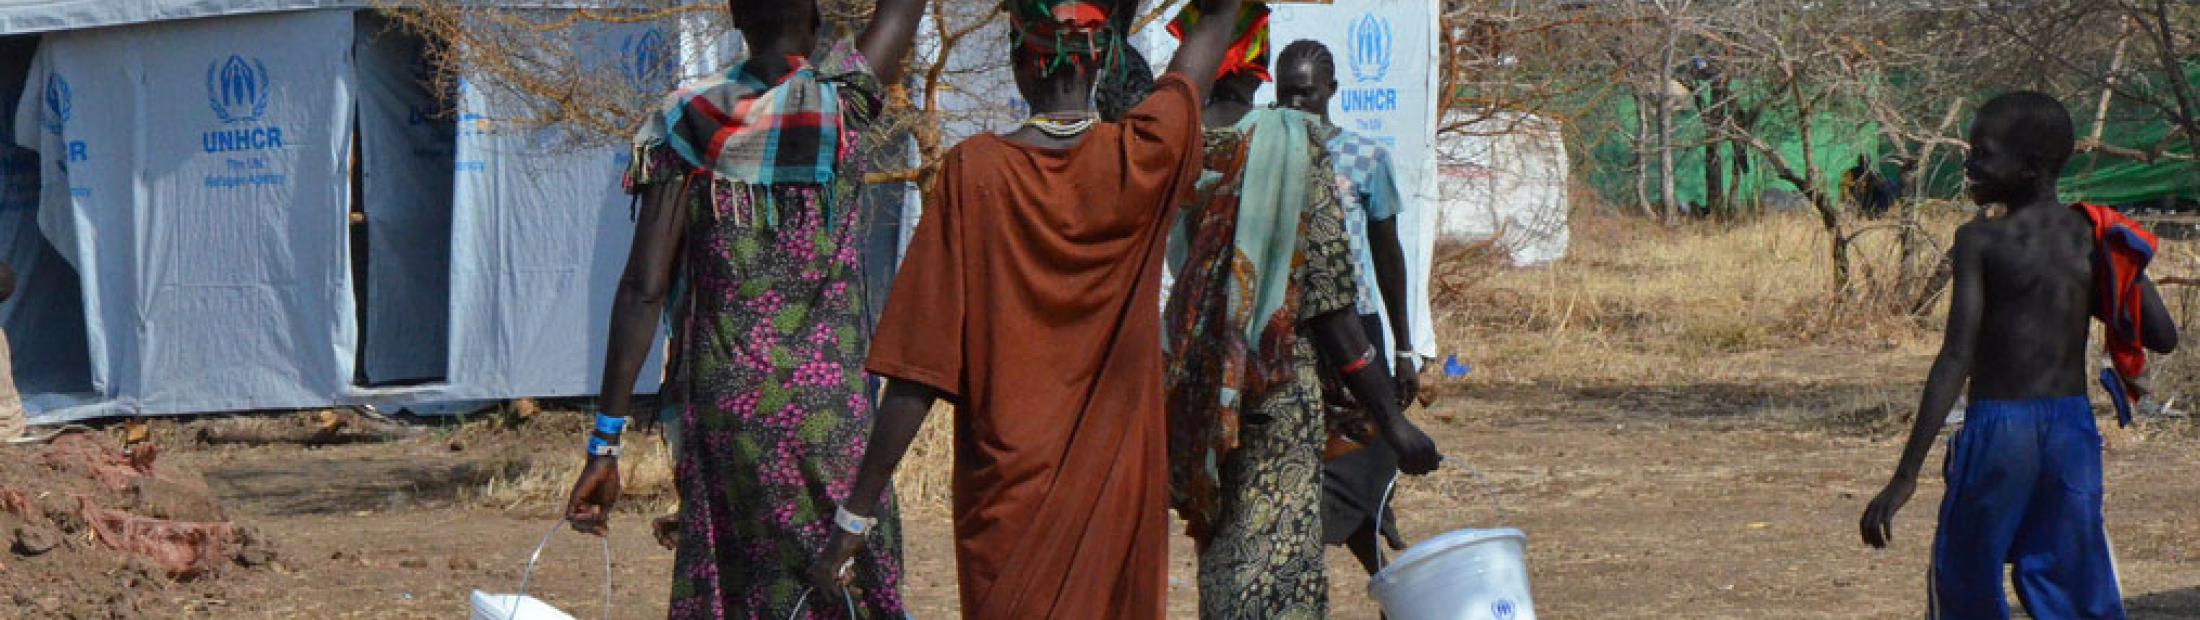 Miles de refugiados huyen de Sudán del Sur a Etiopía